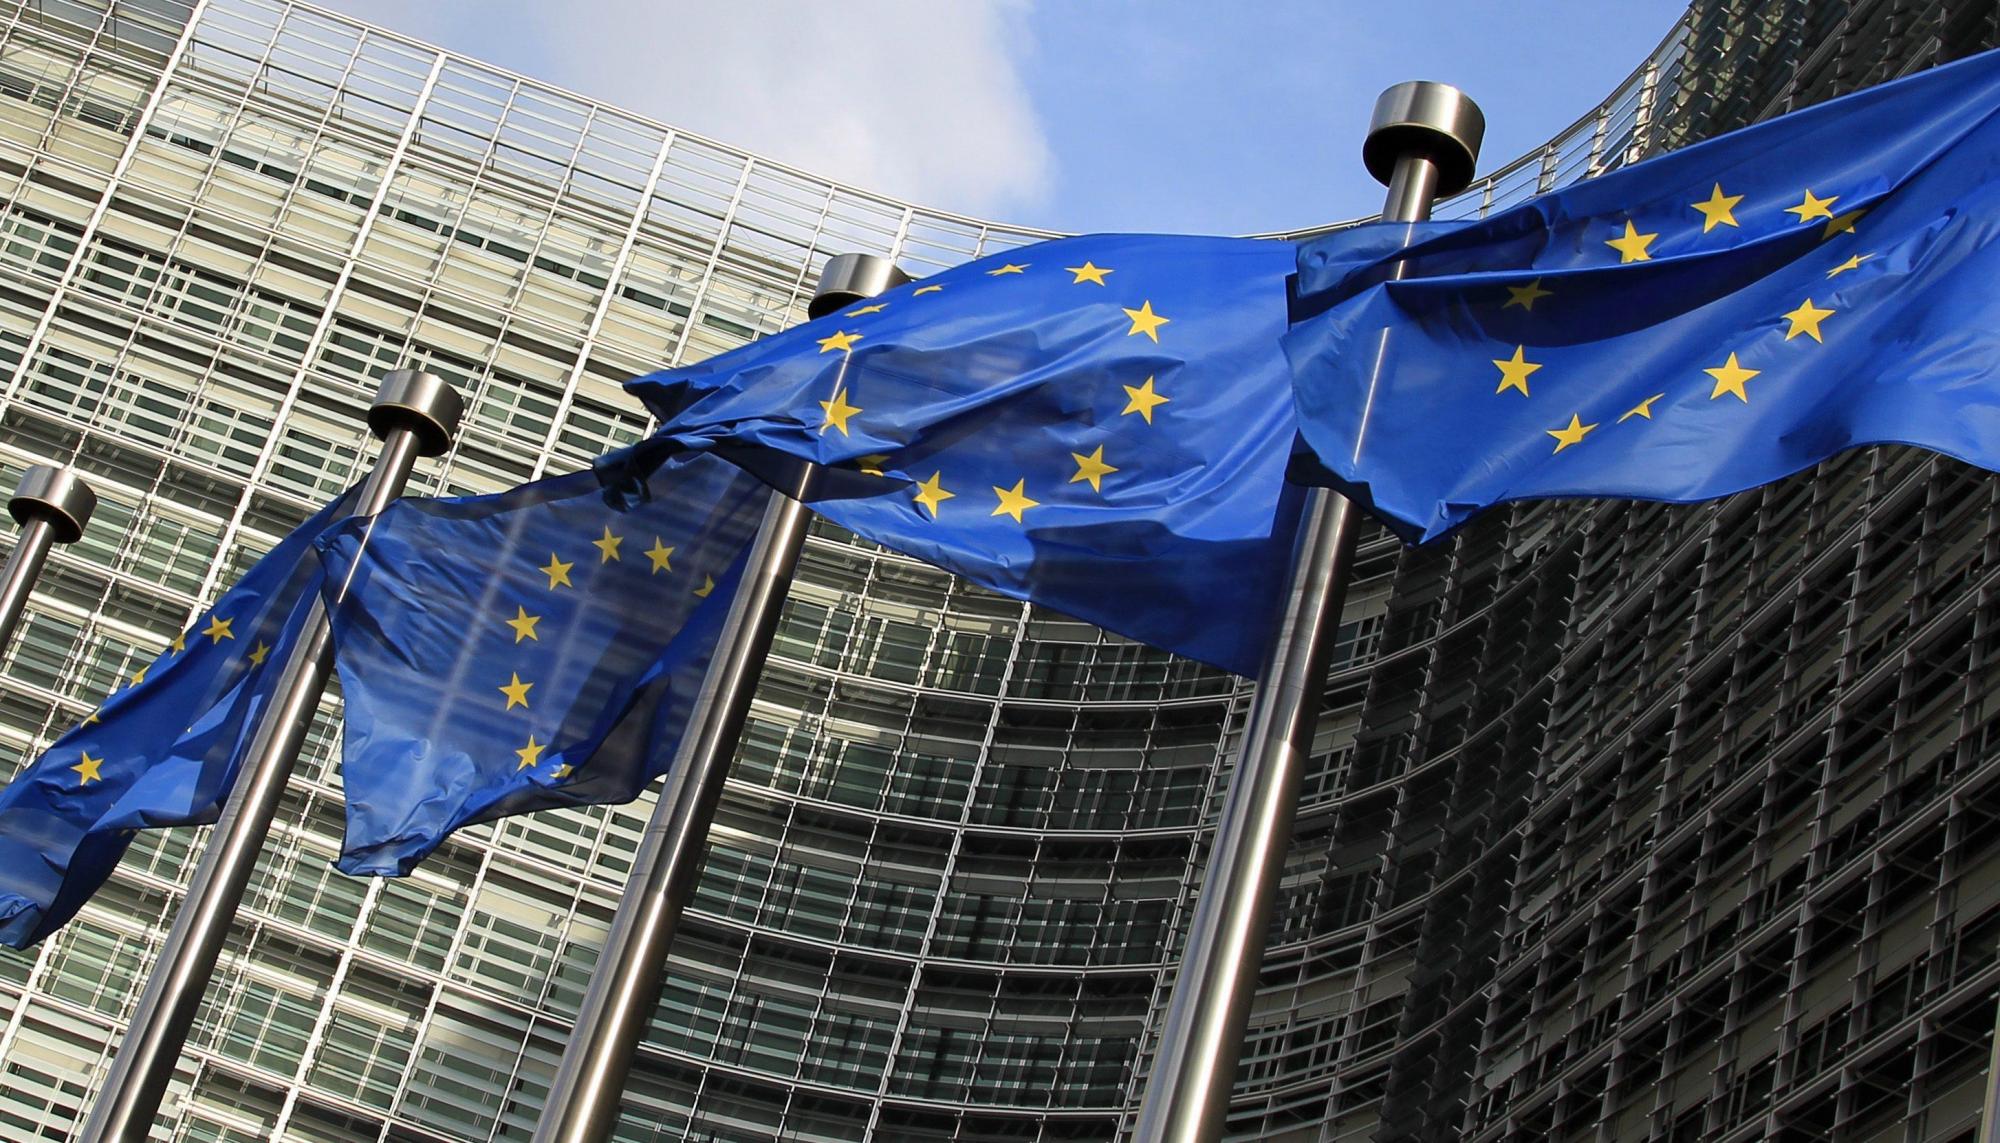 Єврокомісія рекомендувала надати Україні статус кандидата в члени ЄС